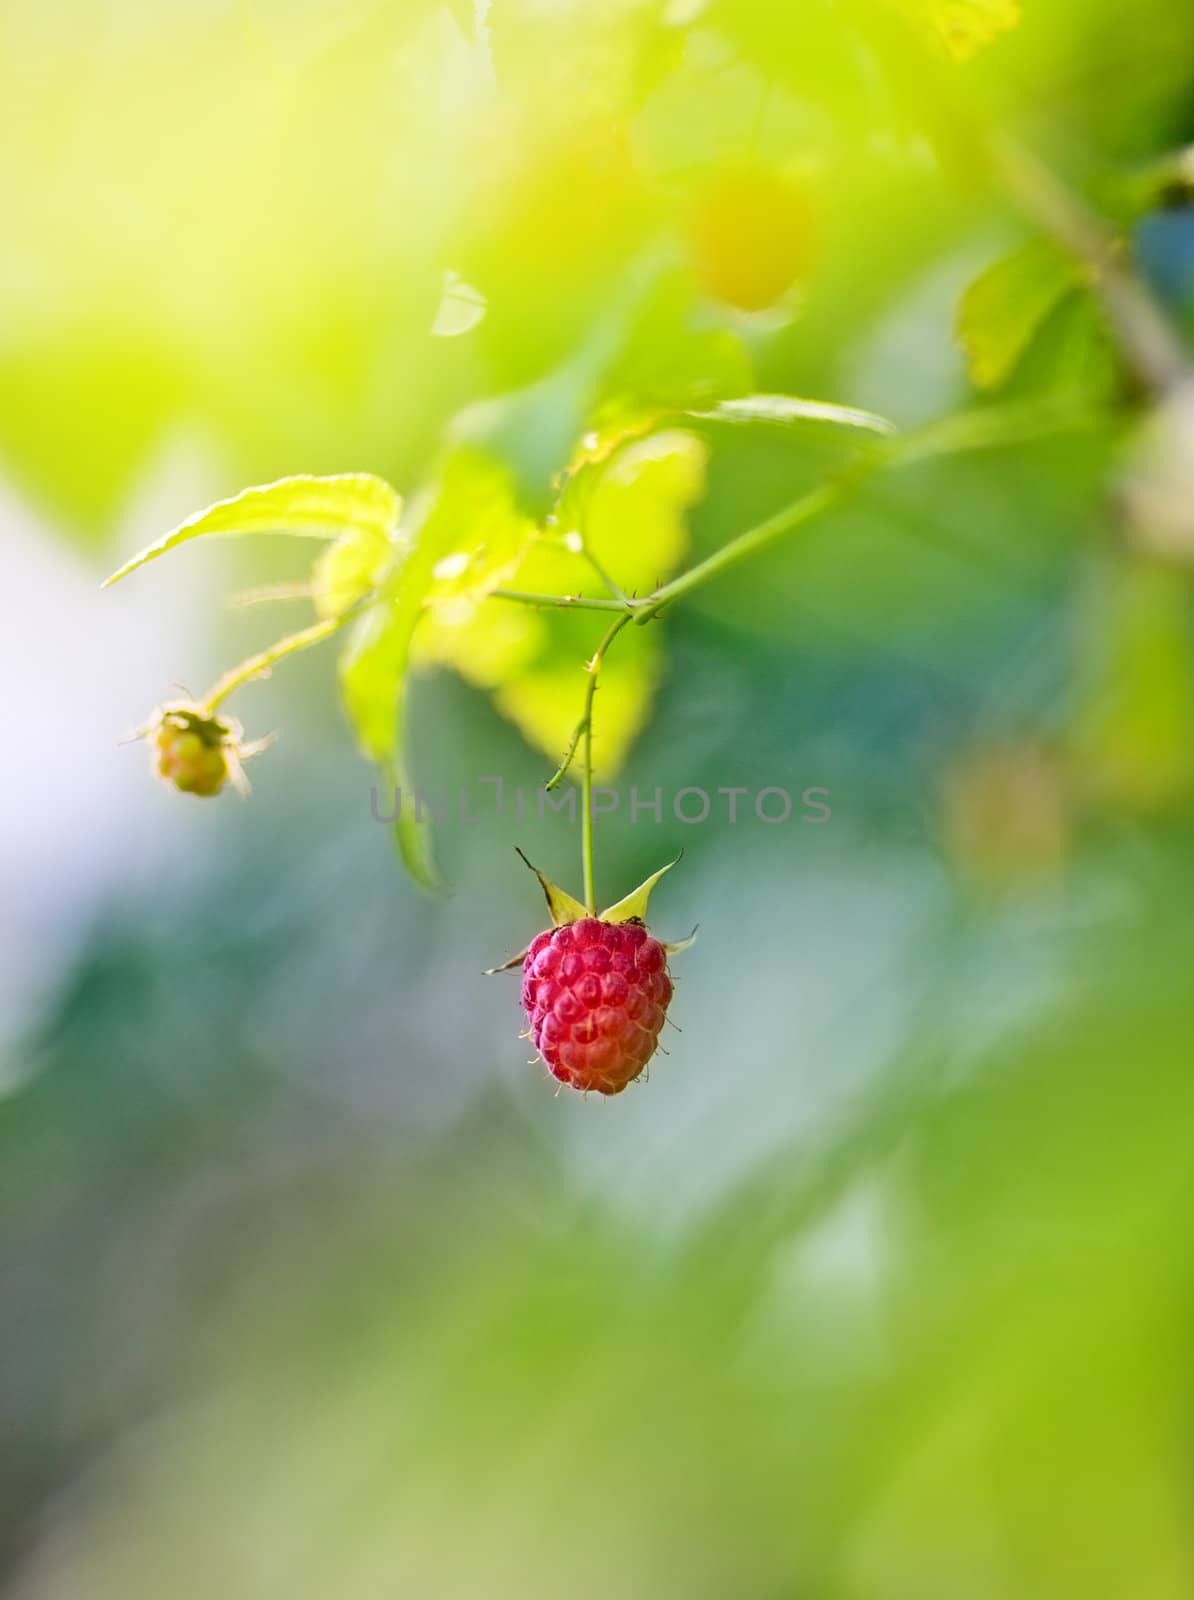 single ripe raspberry on branch in sunbeams